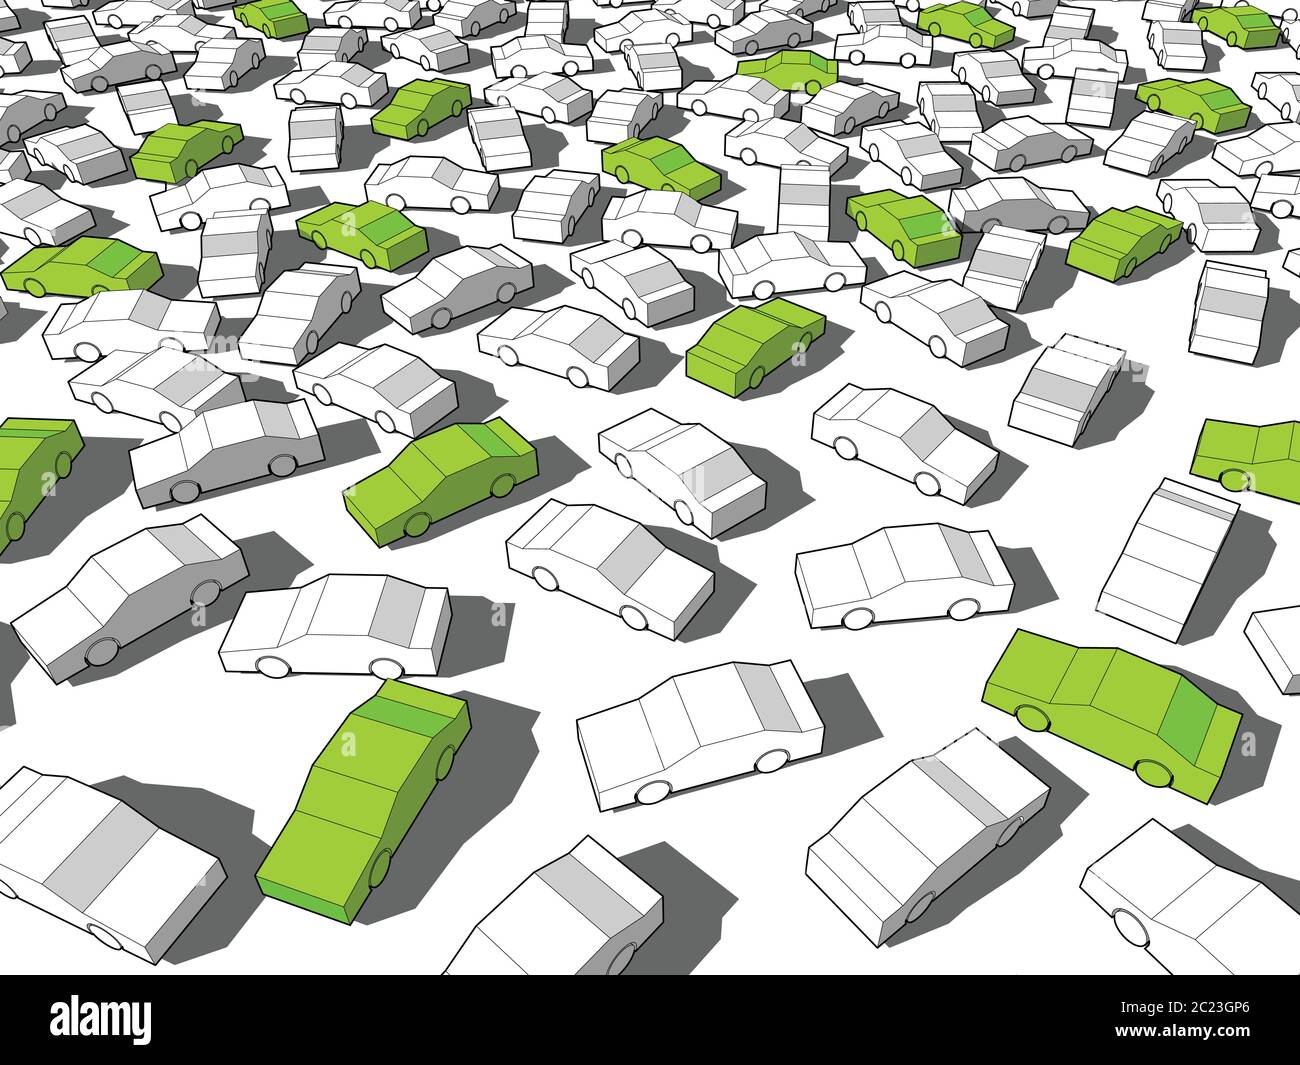 Auto ecologiche verdi che si levano in piedi fuori dagli altri in ingente ingorgo di traffico Illustrazione Vettoriale